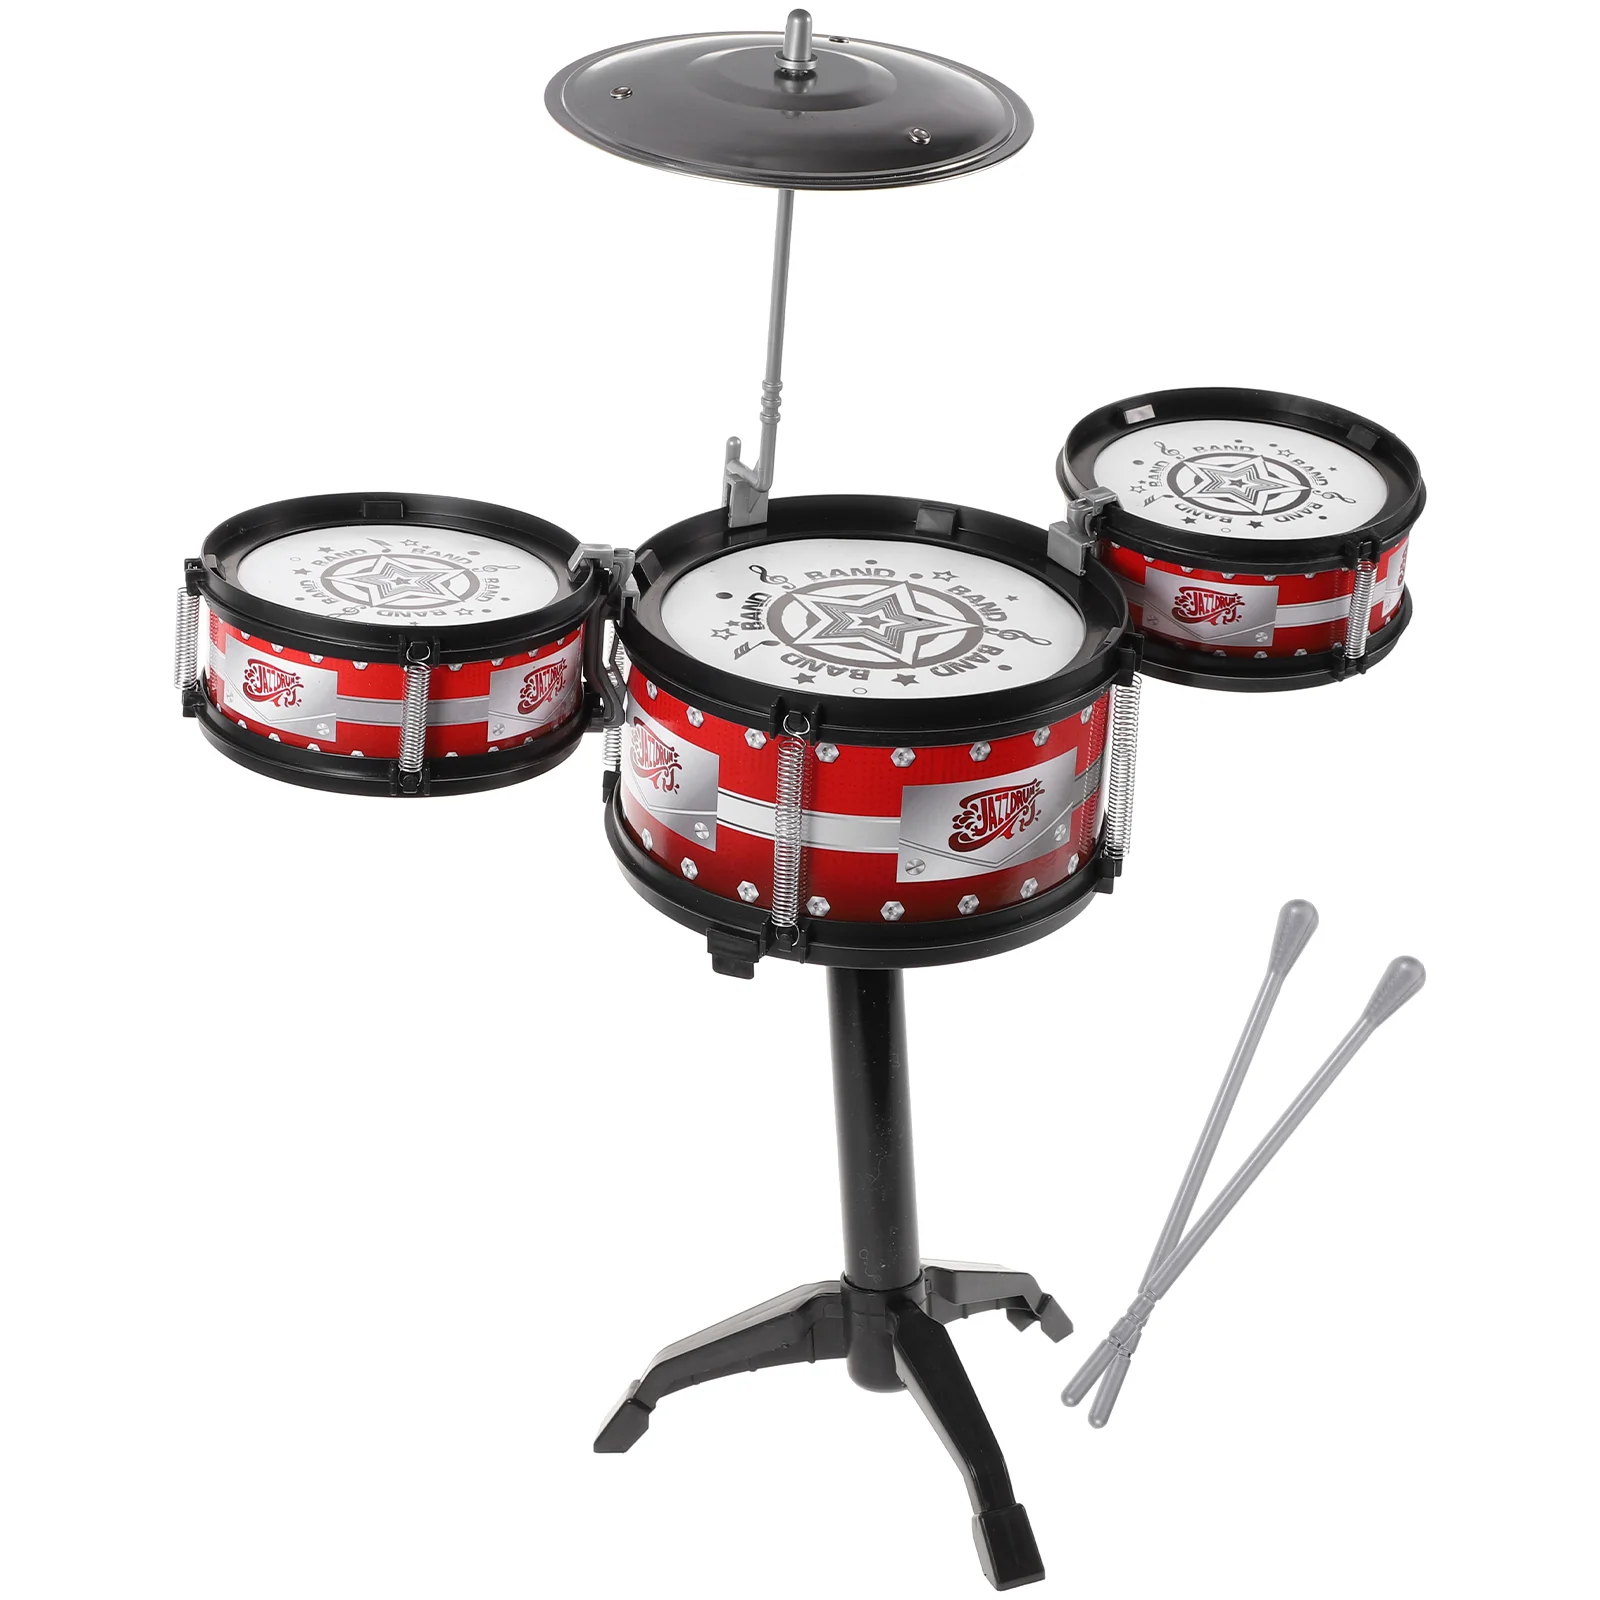 

Детский барабанный набор, перкуссионный инструмент: детская игра с 3 барабанами, музыкальное развитие, игральные барабаны для дошкольного дома, обучающий барабан